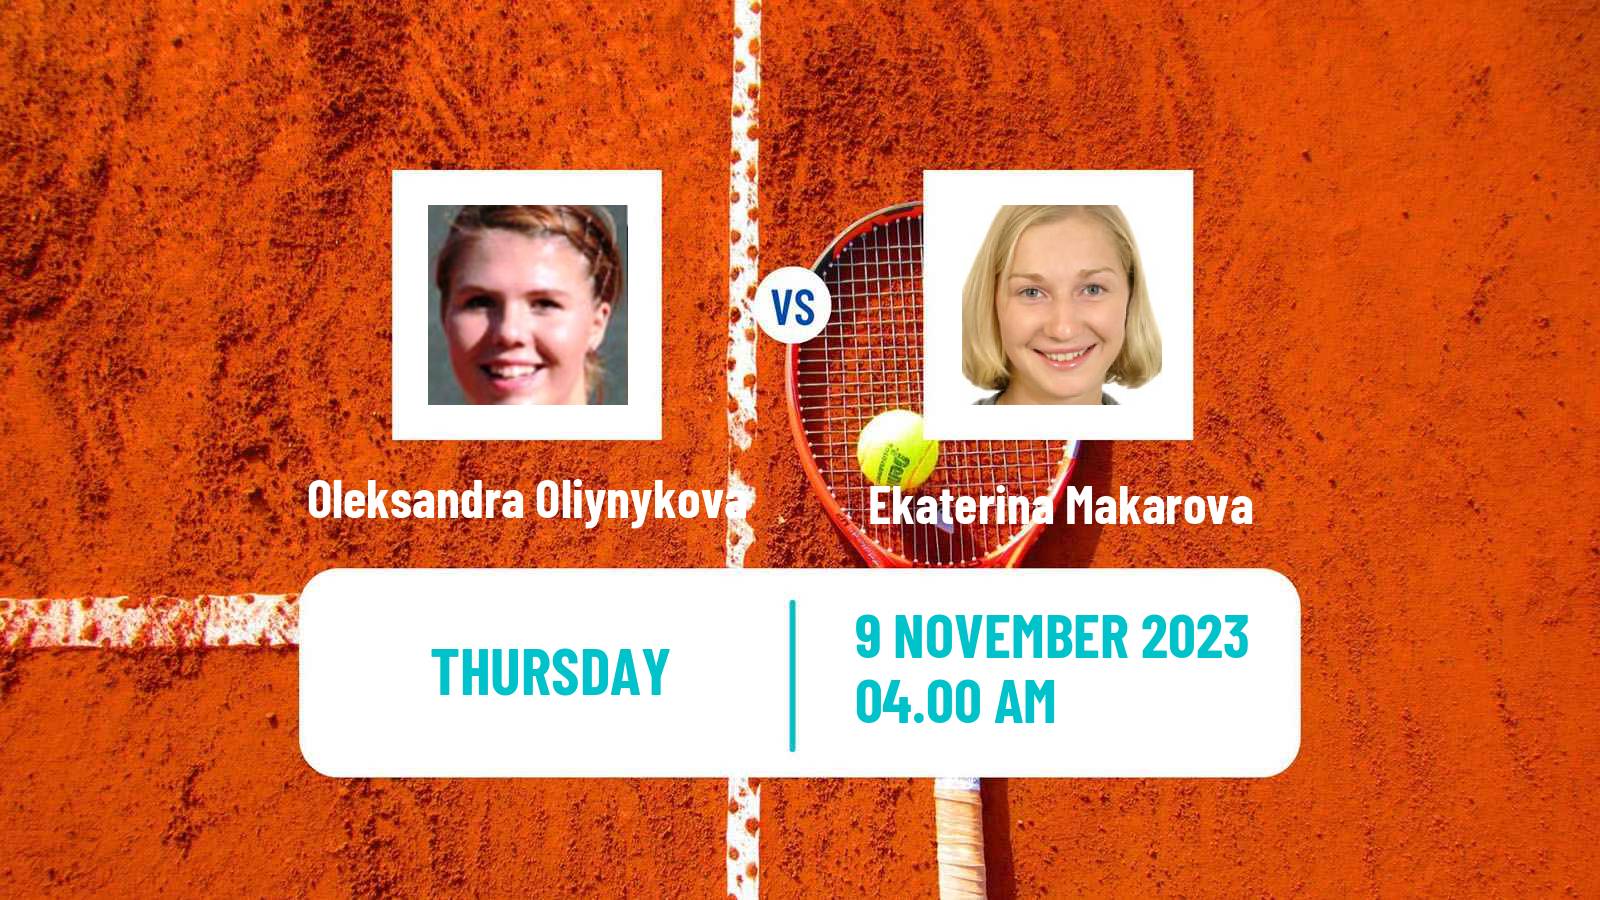 Tennis ITF W40 Heraklion 2 Women Oleksandra Oliynykova - Ekaterina Makarova